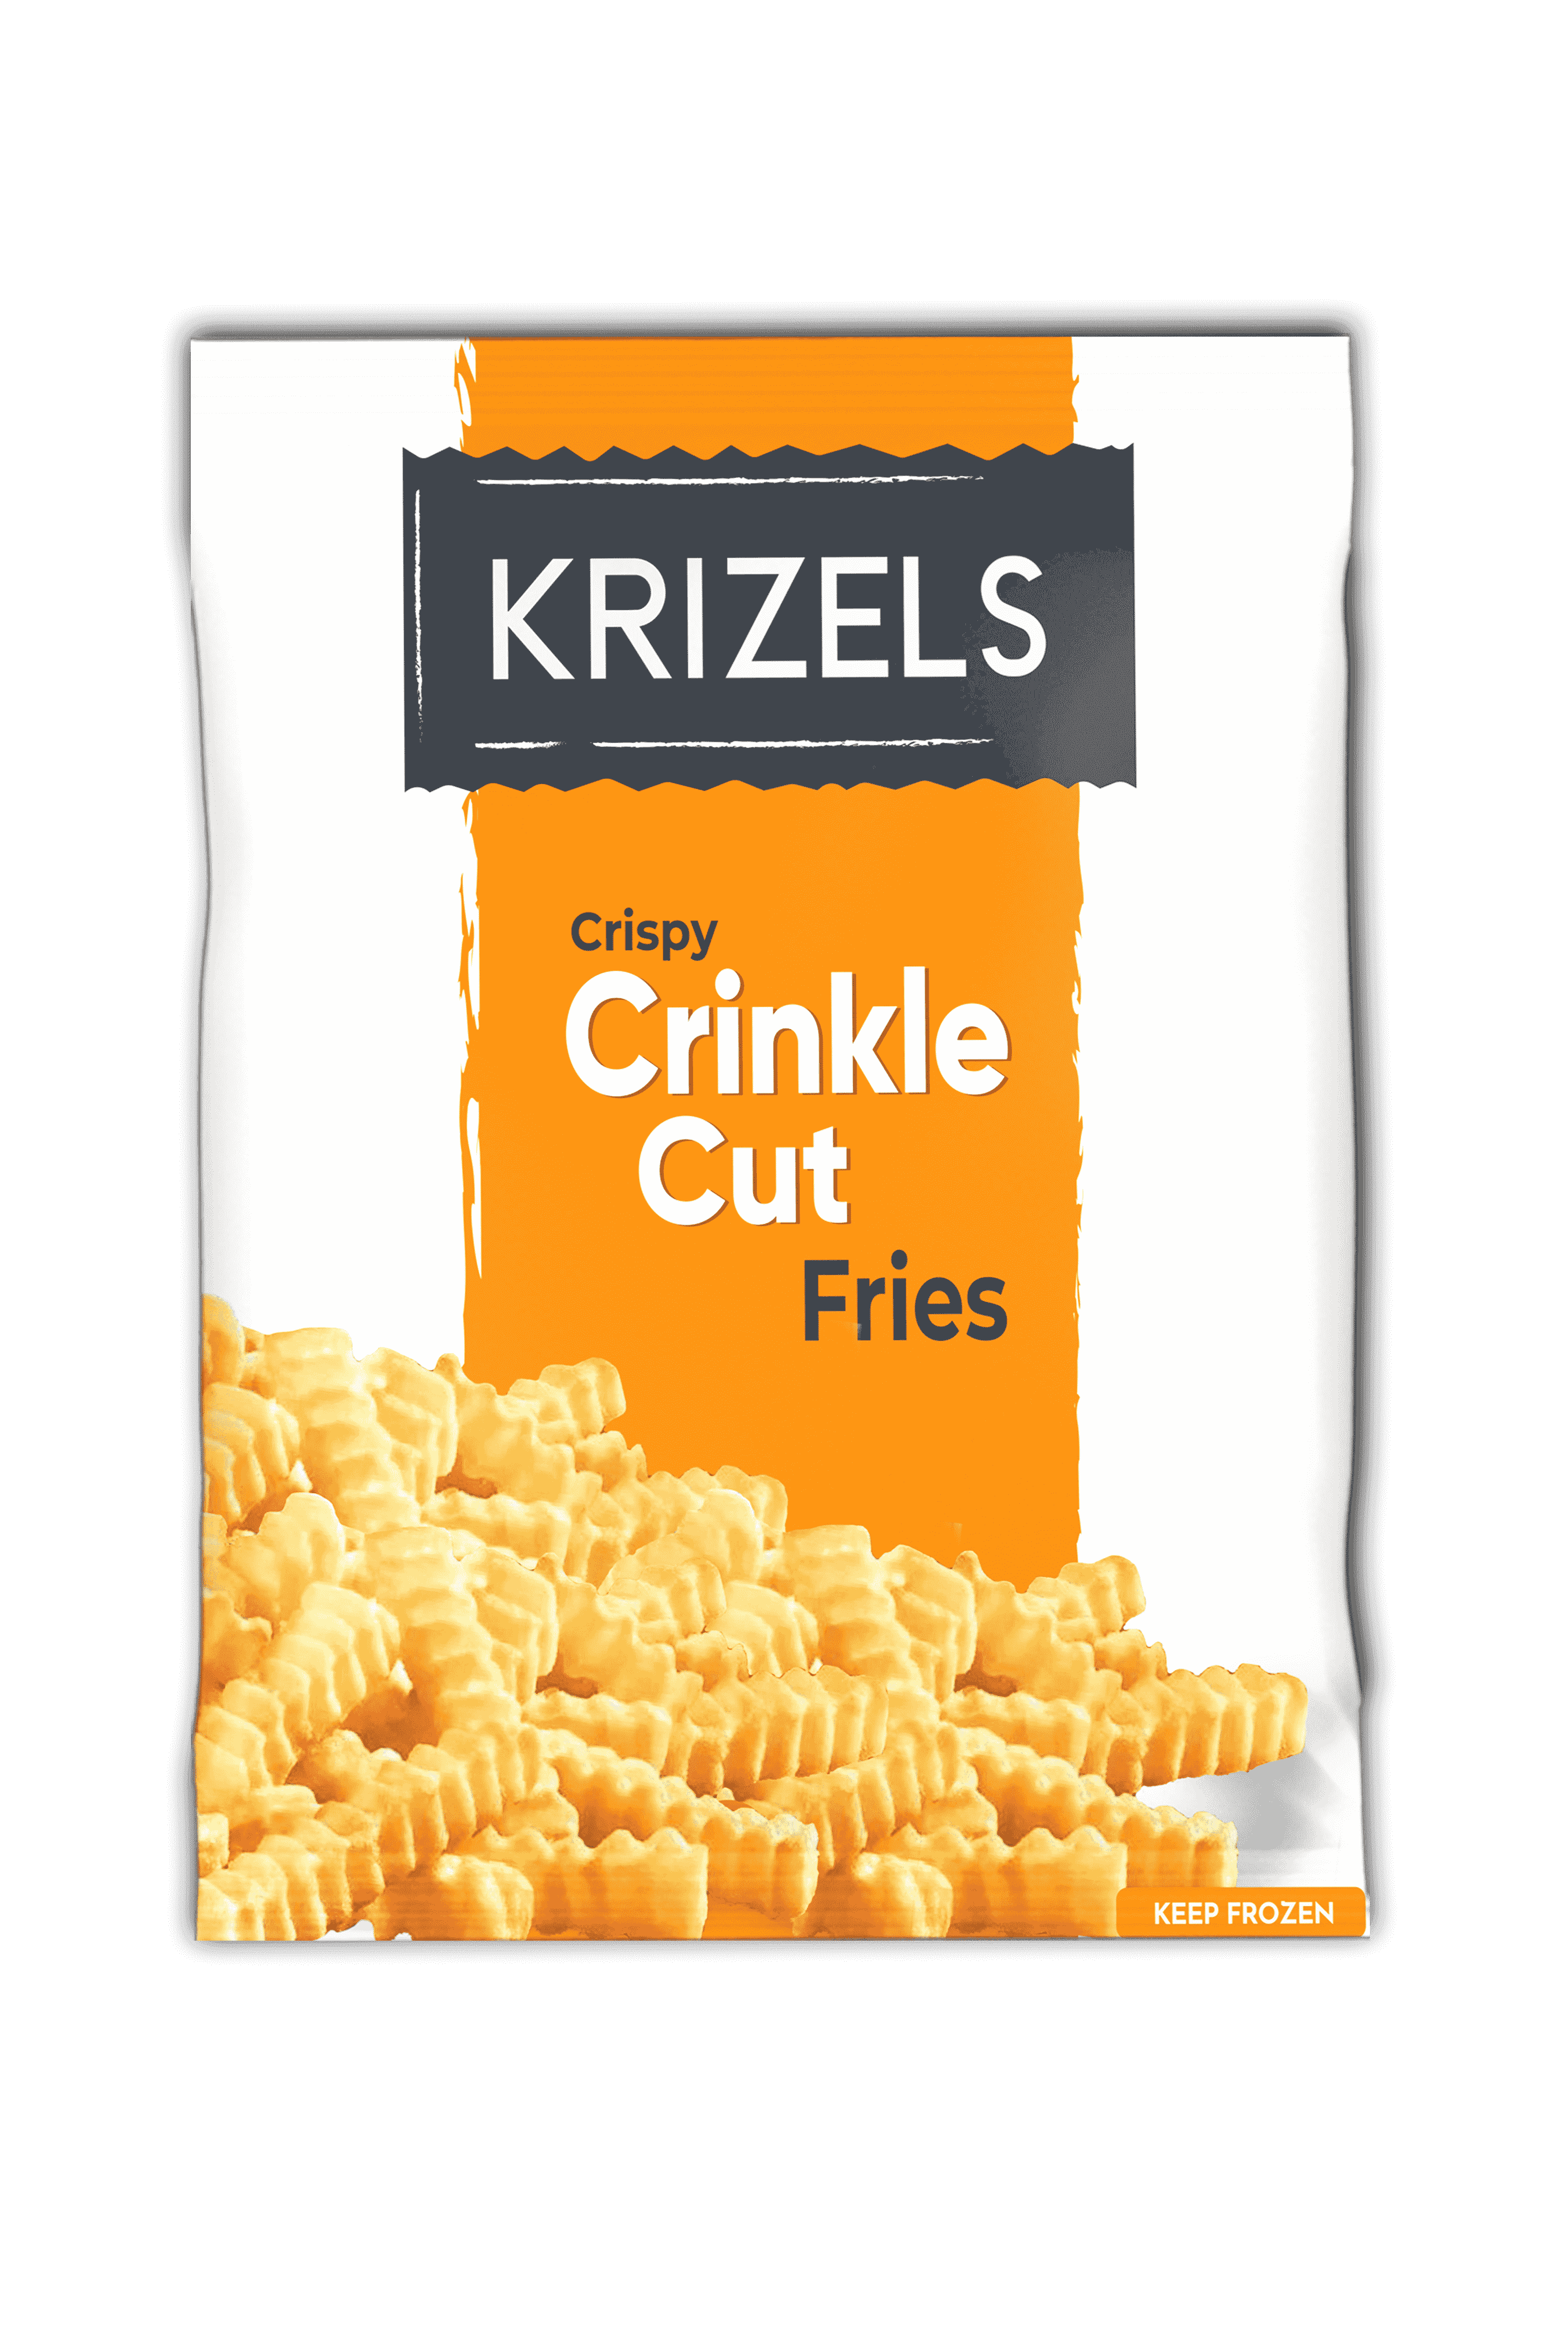 Frozen fries, 1/2 crinkle cut, Zig zag fries